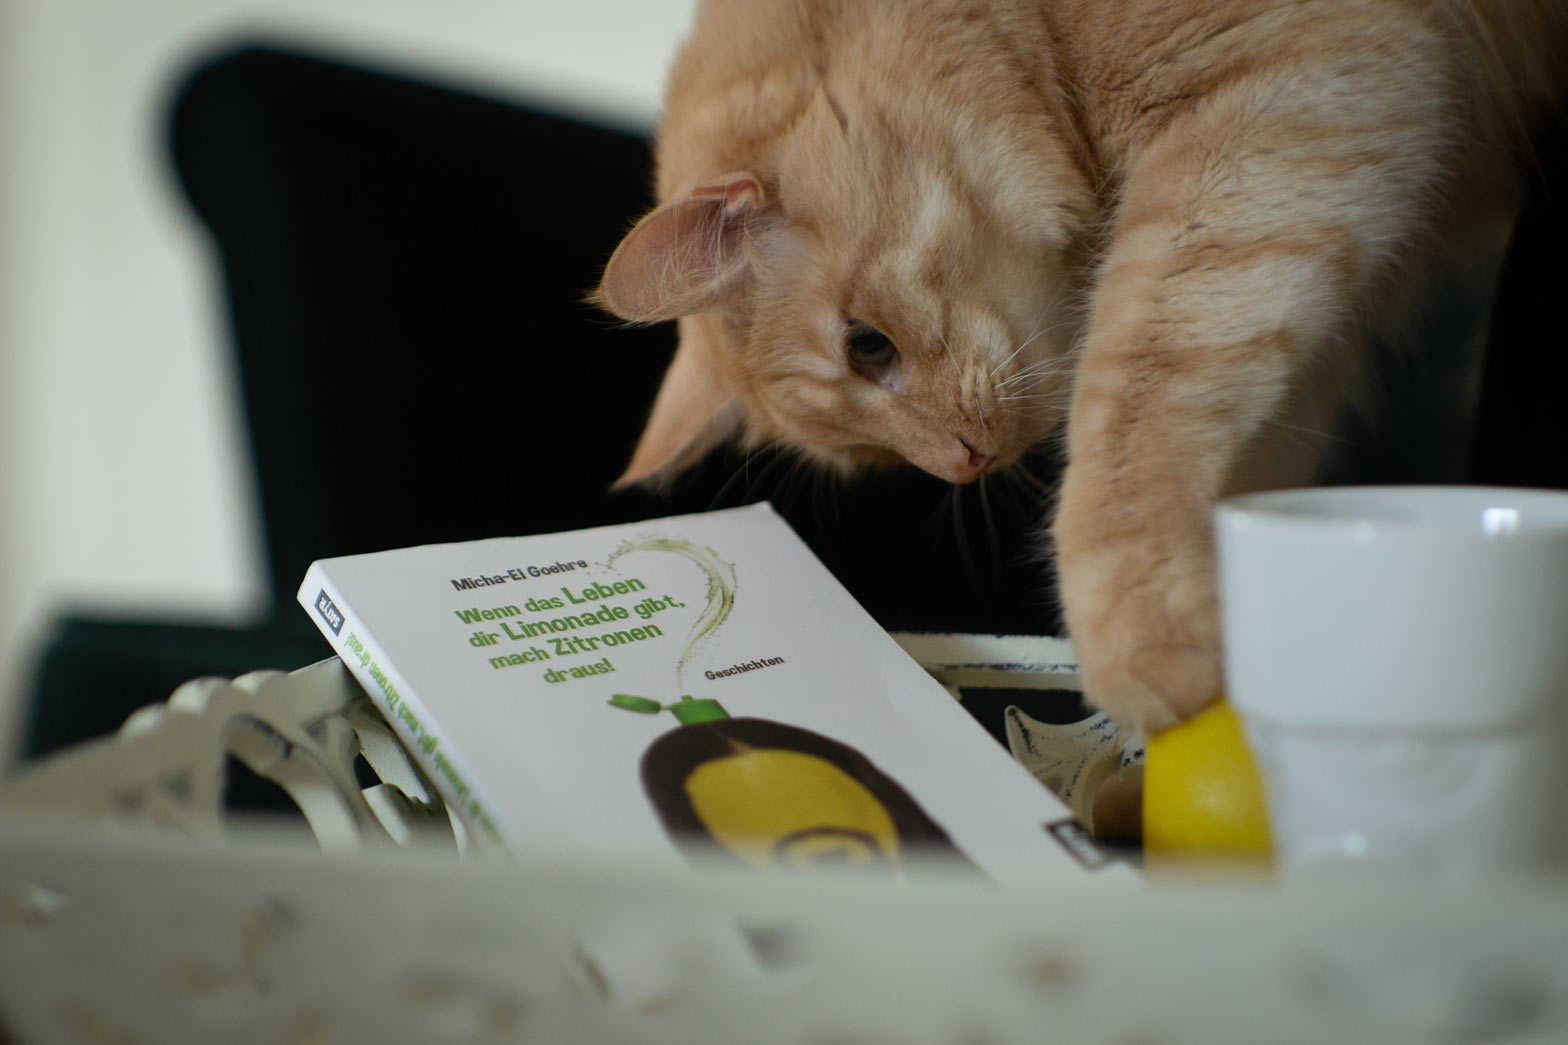 Tablett mit Buch "Wenn das Leben dir Limonade gibt, mach Zitronen draus!" von Micha-El Goehre und Kaffetasse und Katze